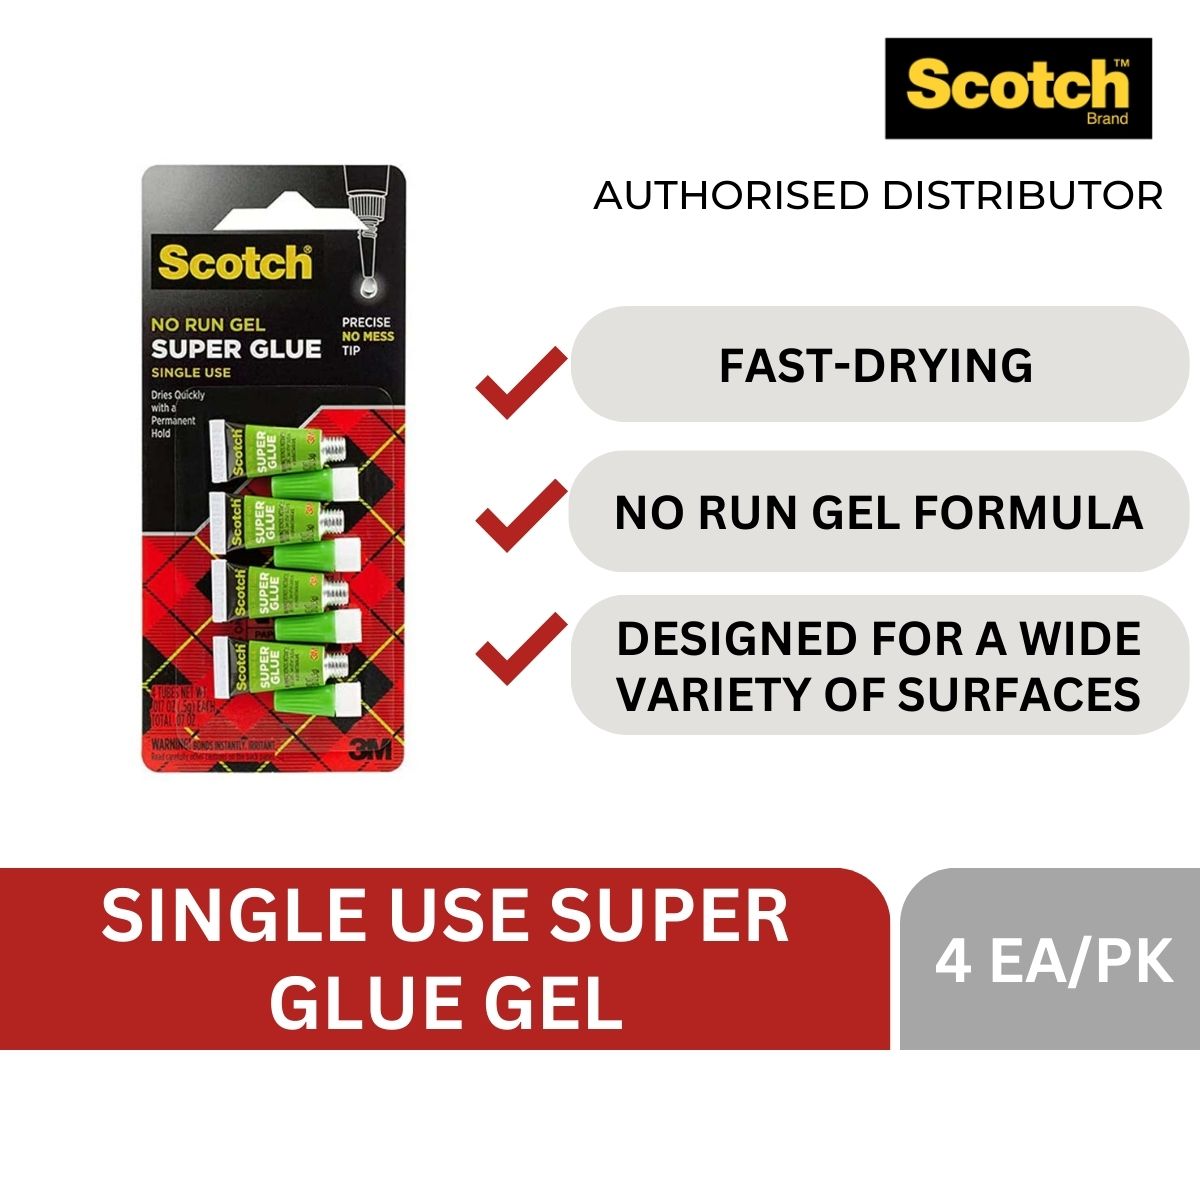 Scotch Single-use Super Glue Gel AD119